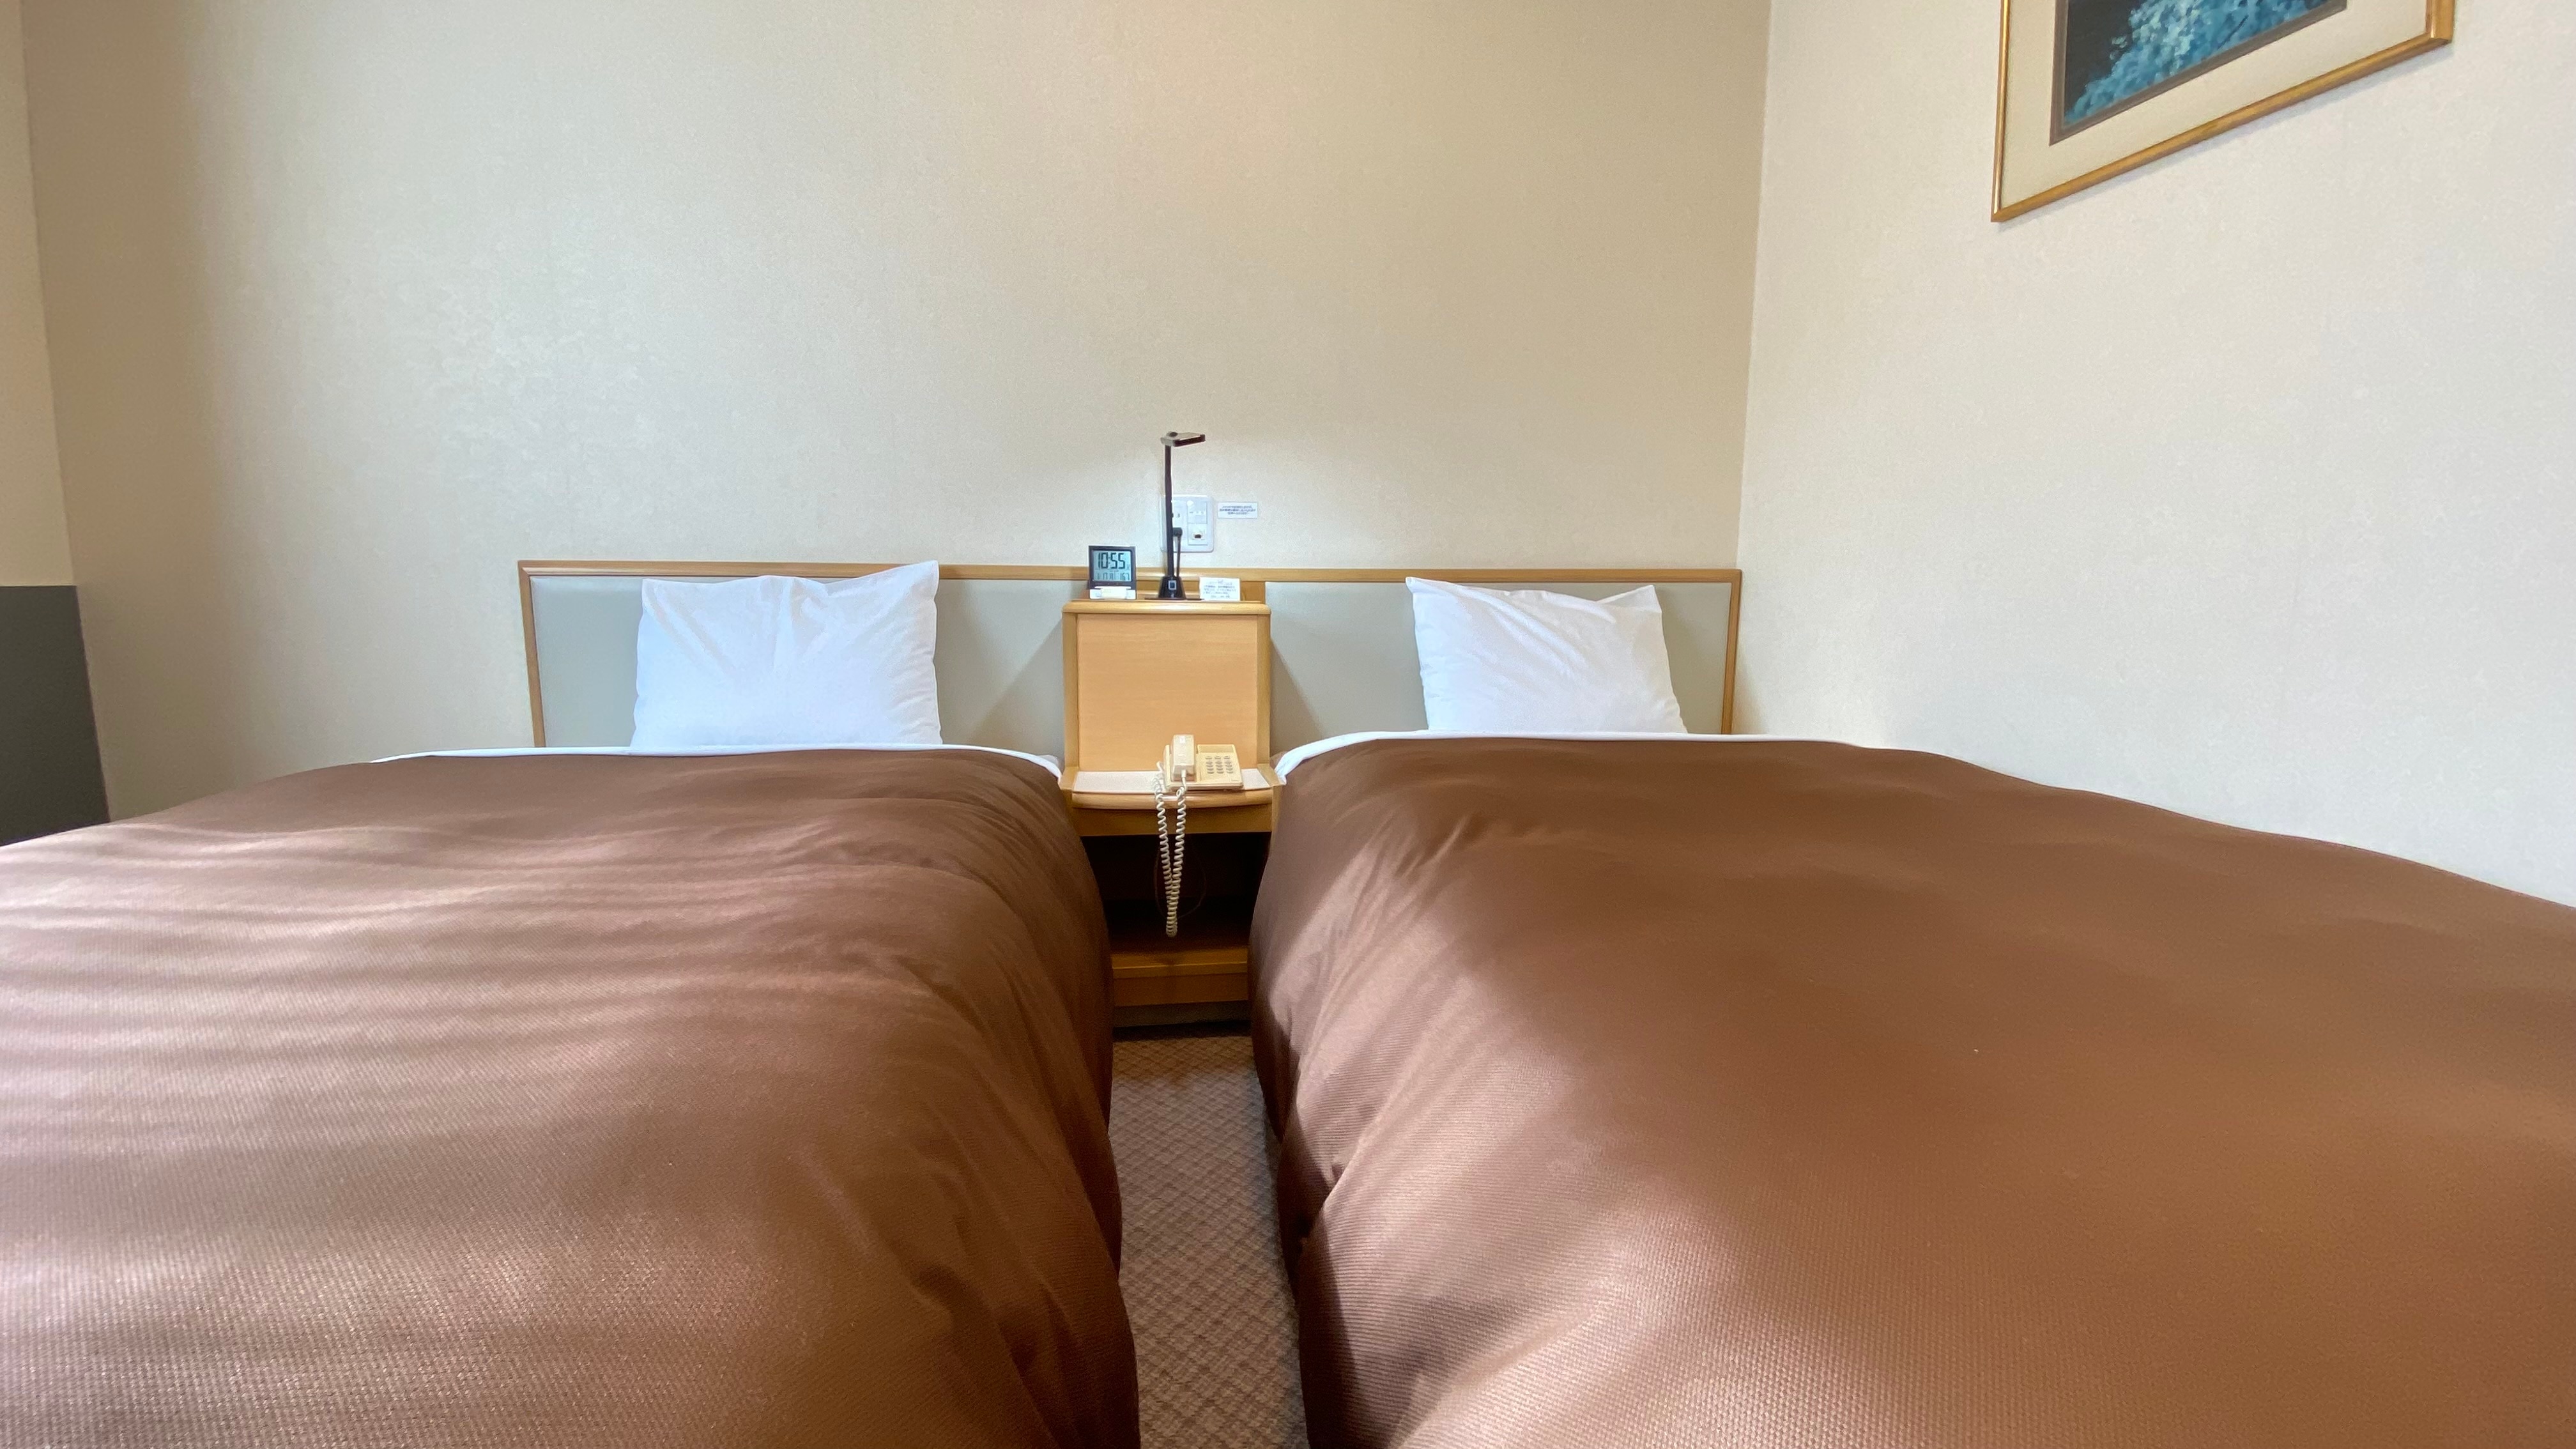 트윈룸 105㎝ 침대 2대. 느긋한 공간에서 느긋하게 편히 쉬십시오.